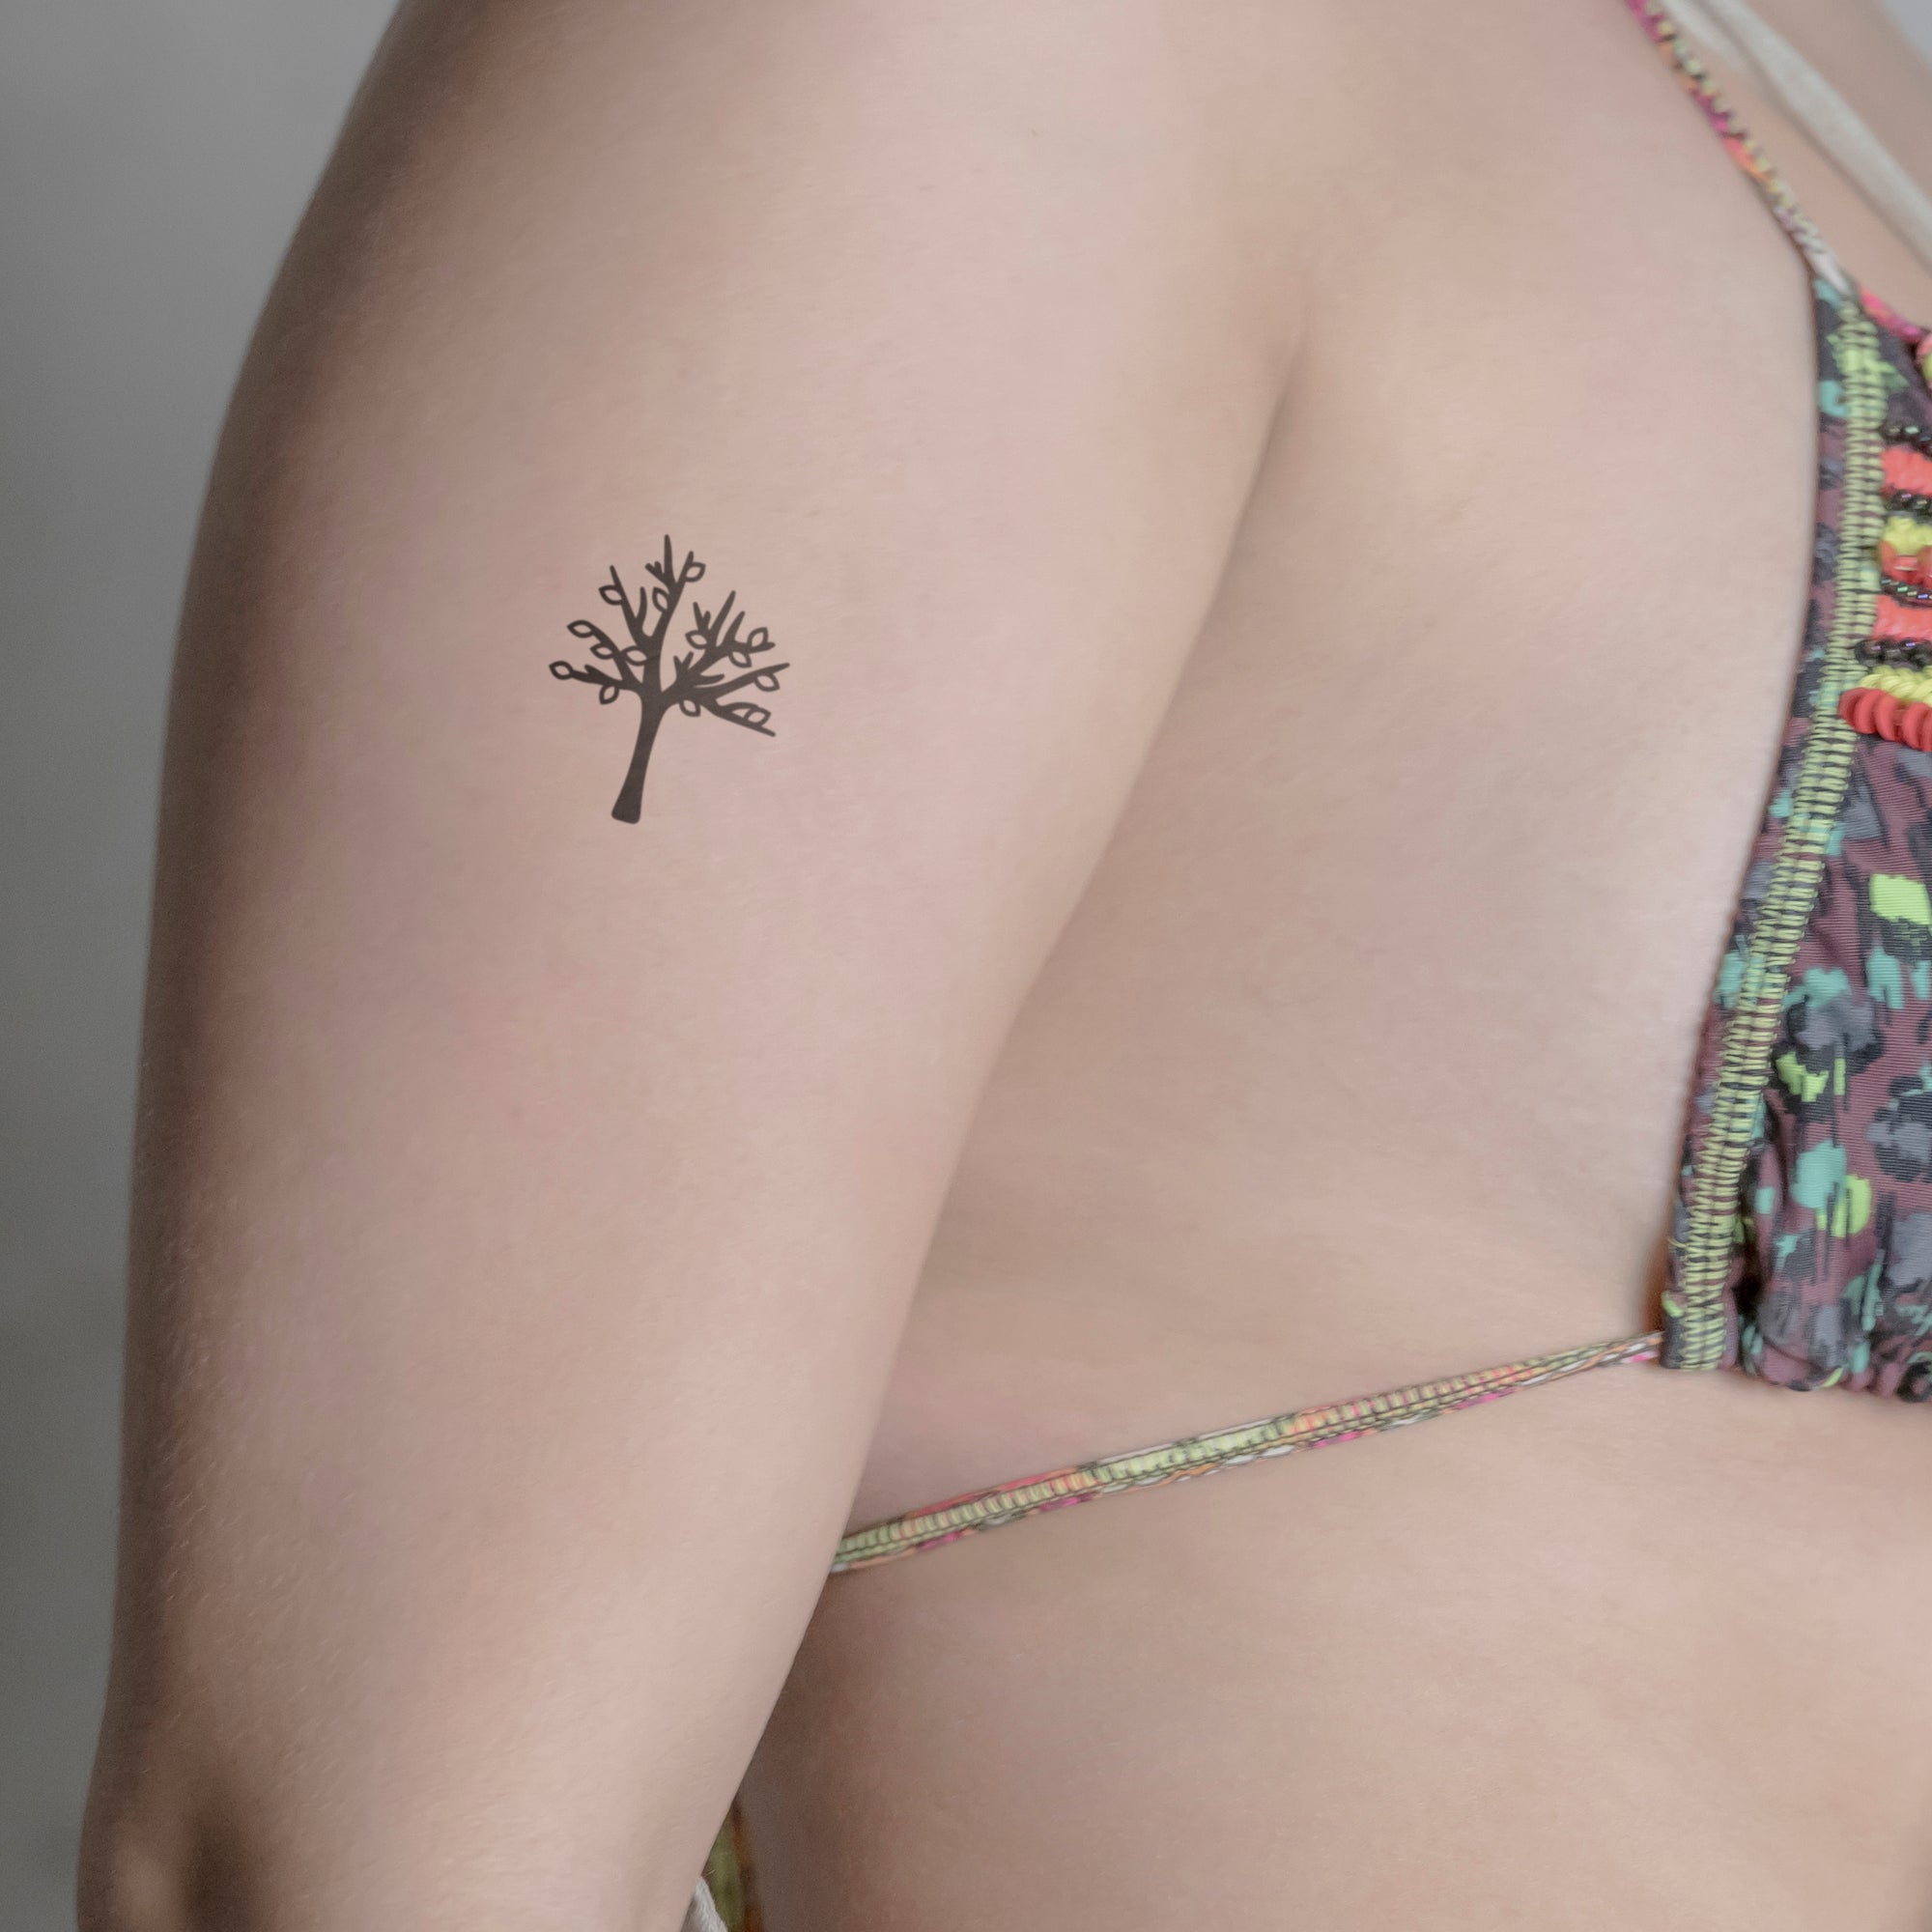 Watercolor – chico lou's fine tattoos